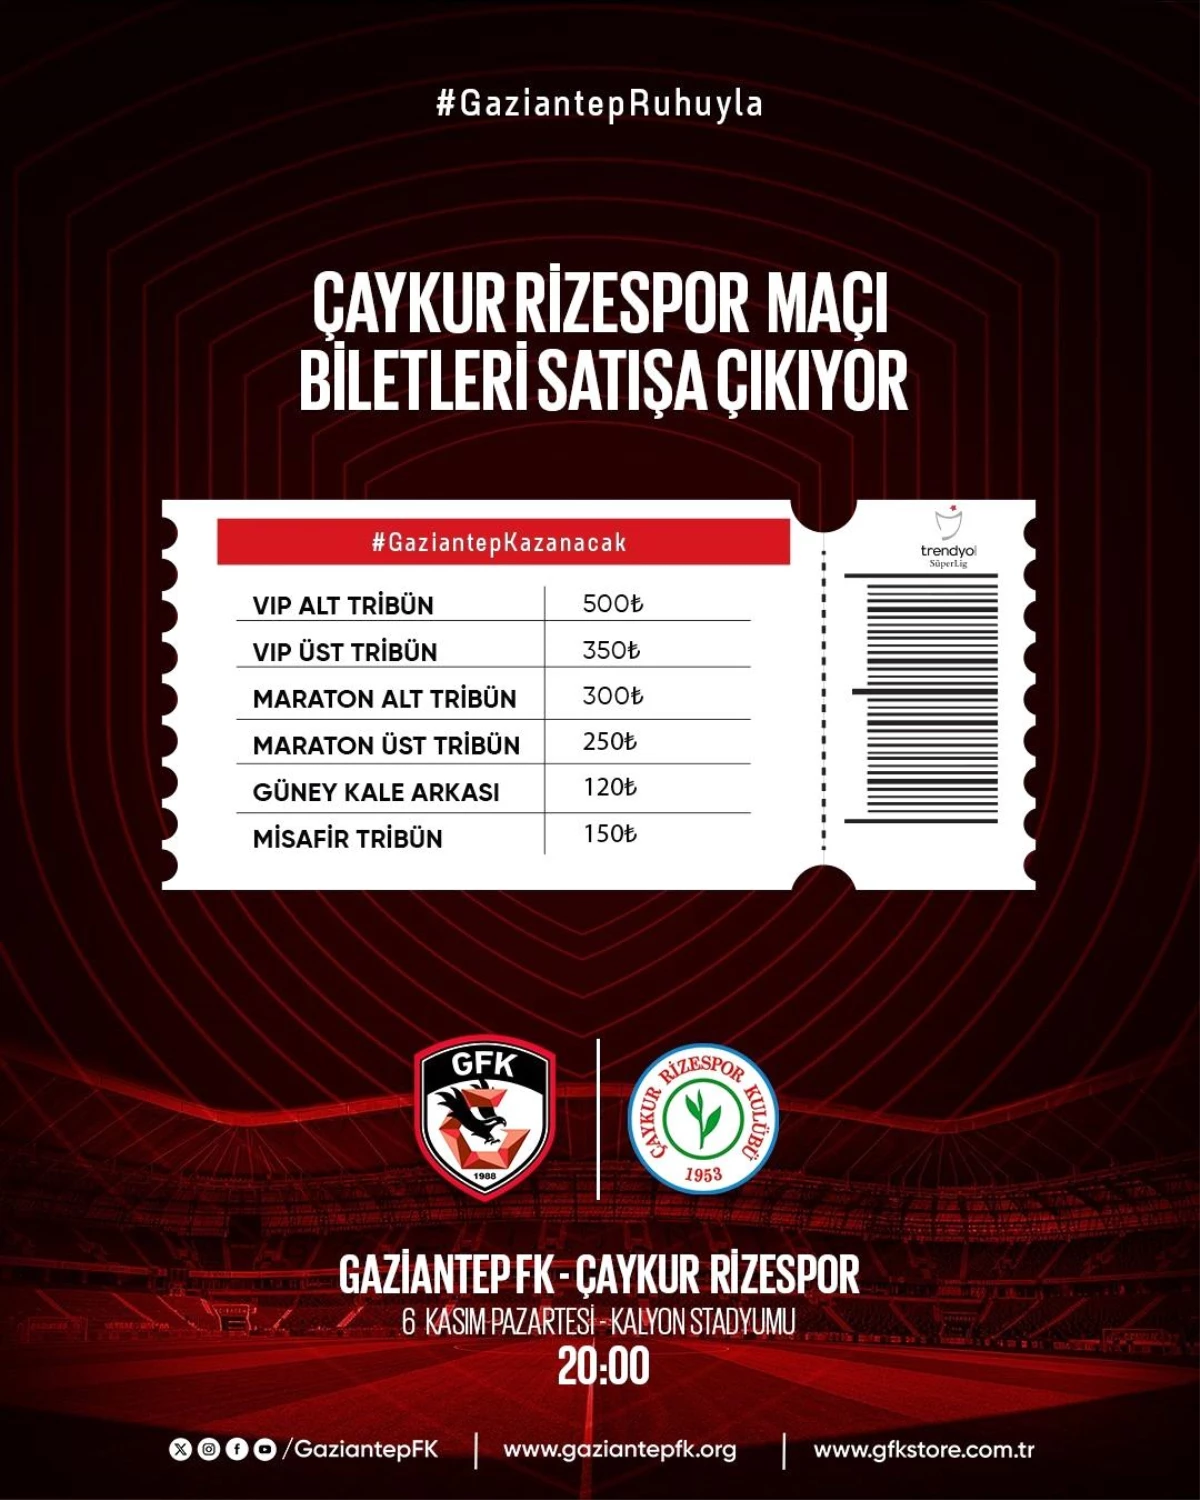 Gaziantep Futbol Kulübü - Çaykur Rizespor maçının biletleri satışa çıktı